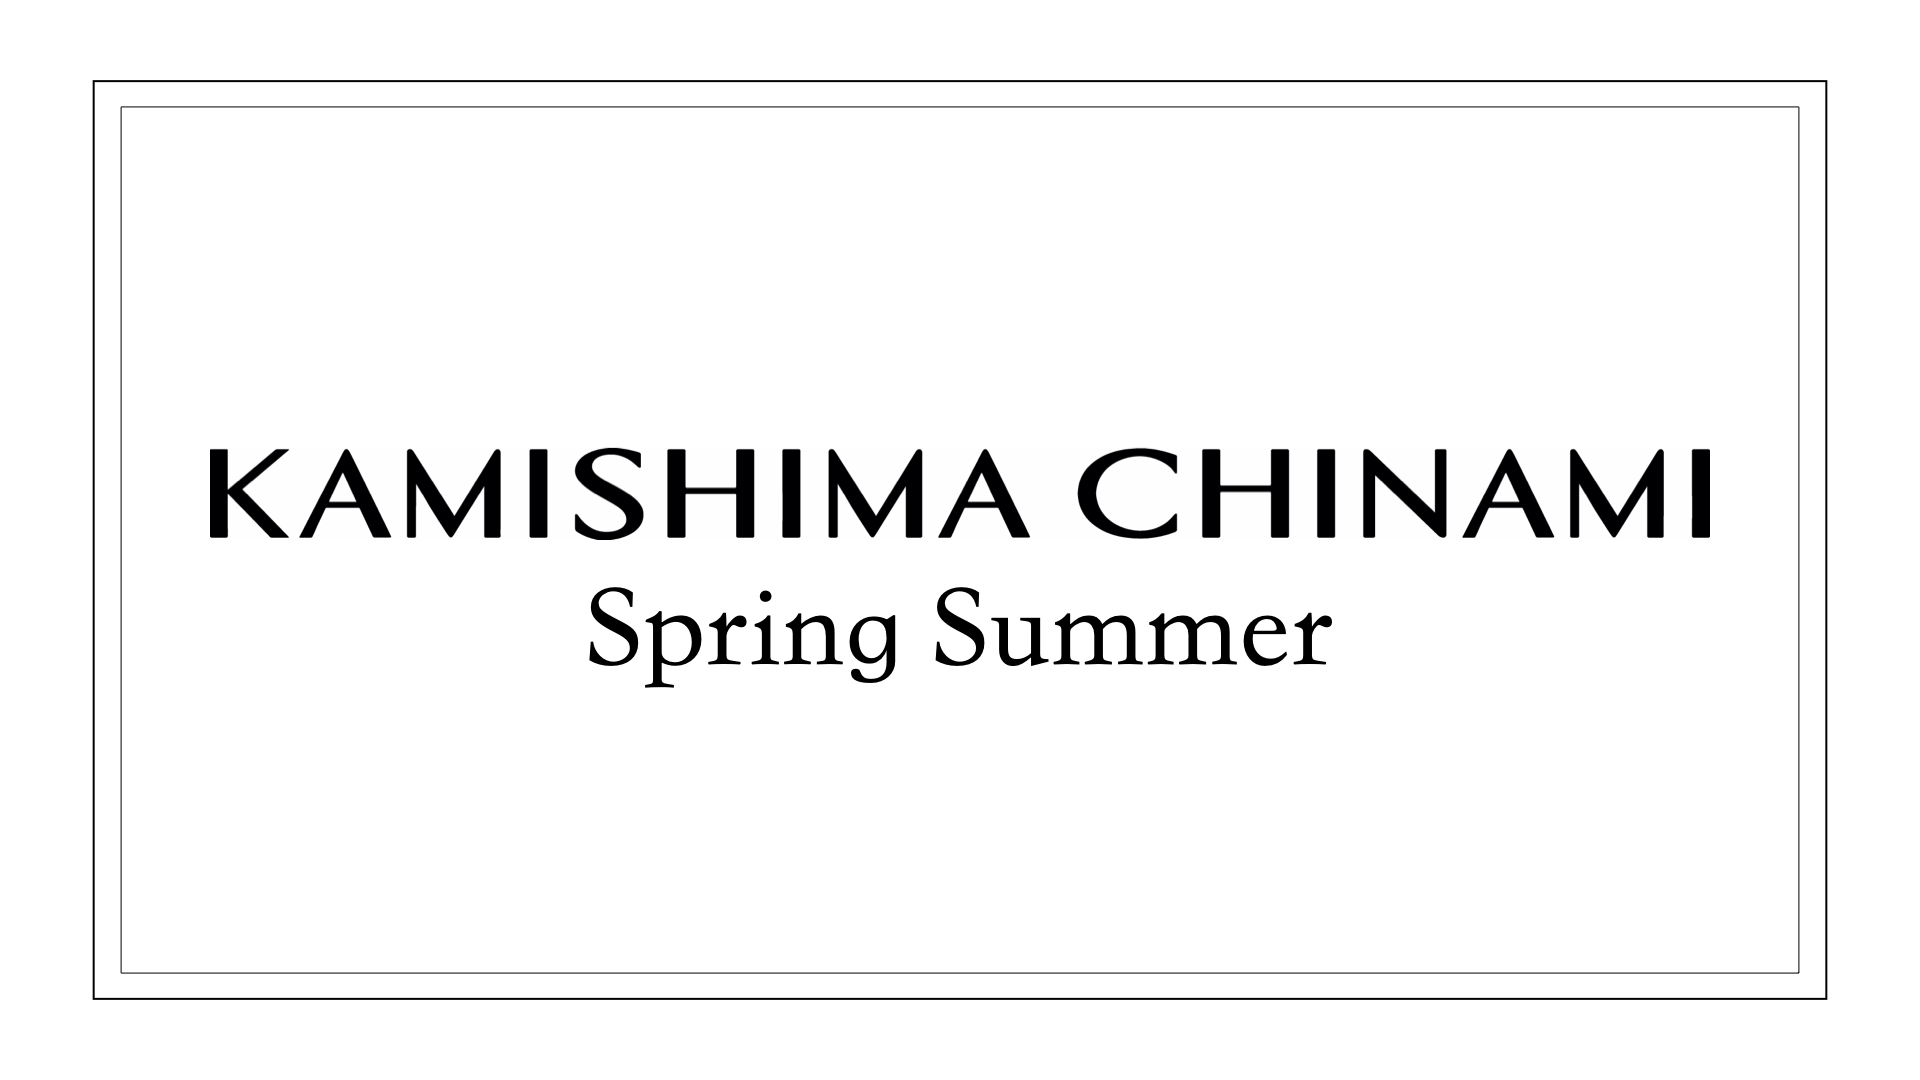 KAMISHIMA CHINAMI Spring Summer